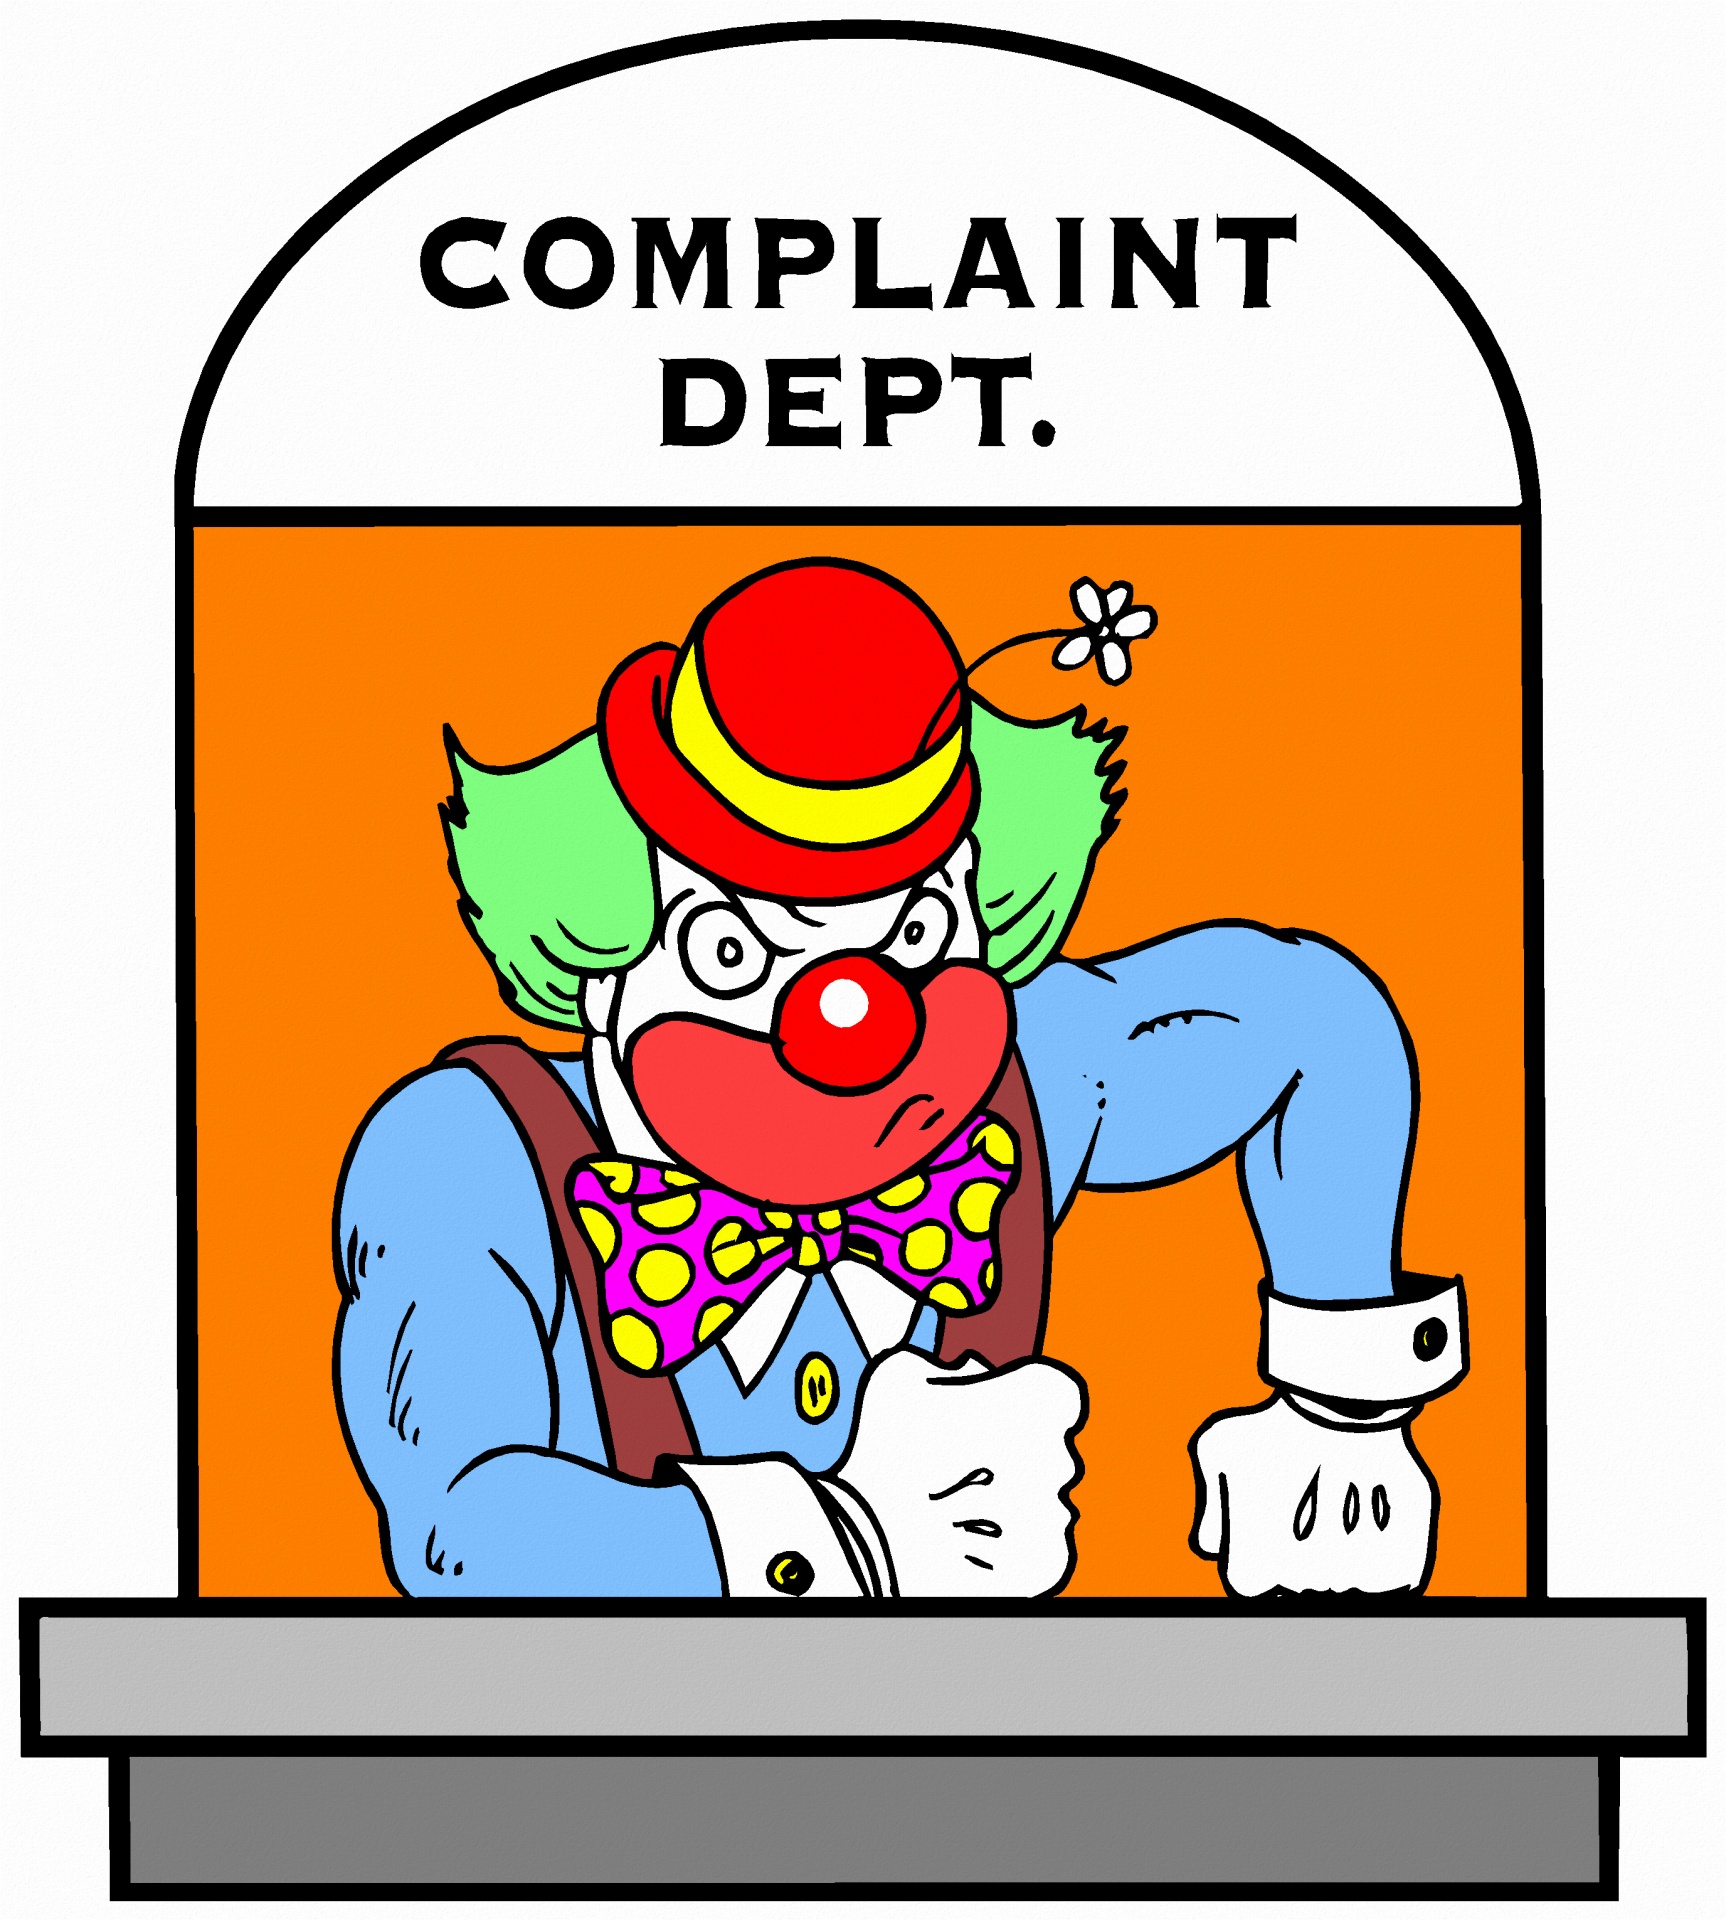 desk complain complaint free photo